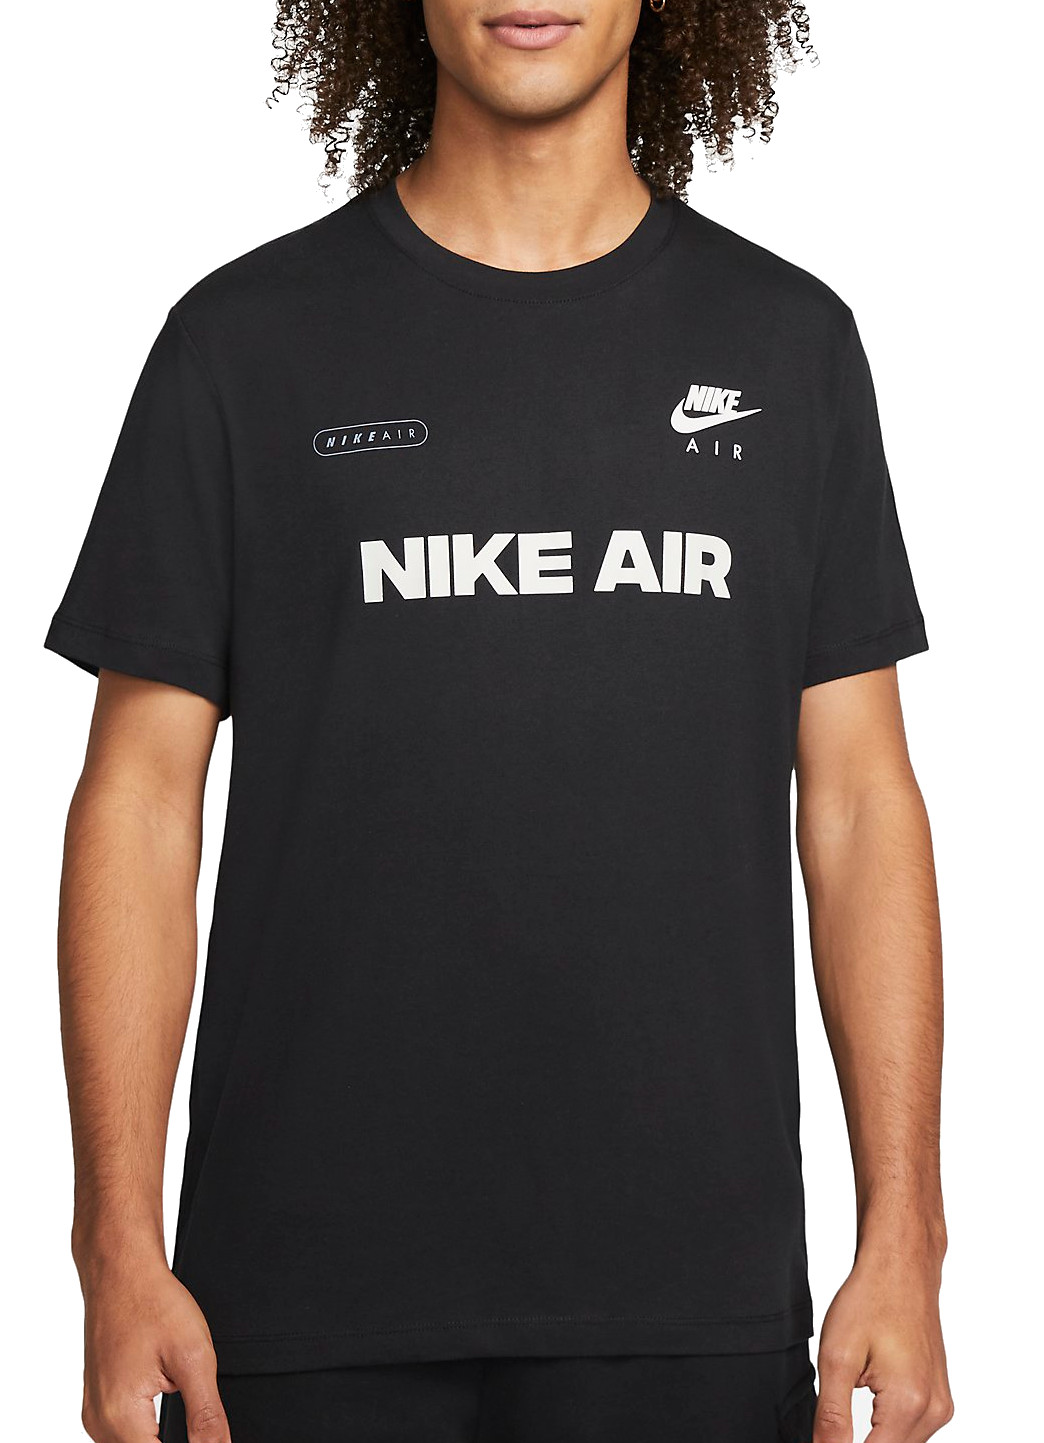 Stylish Nike Air Logo T-Shirt